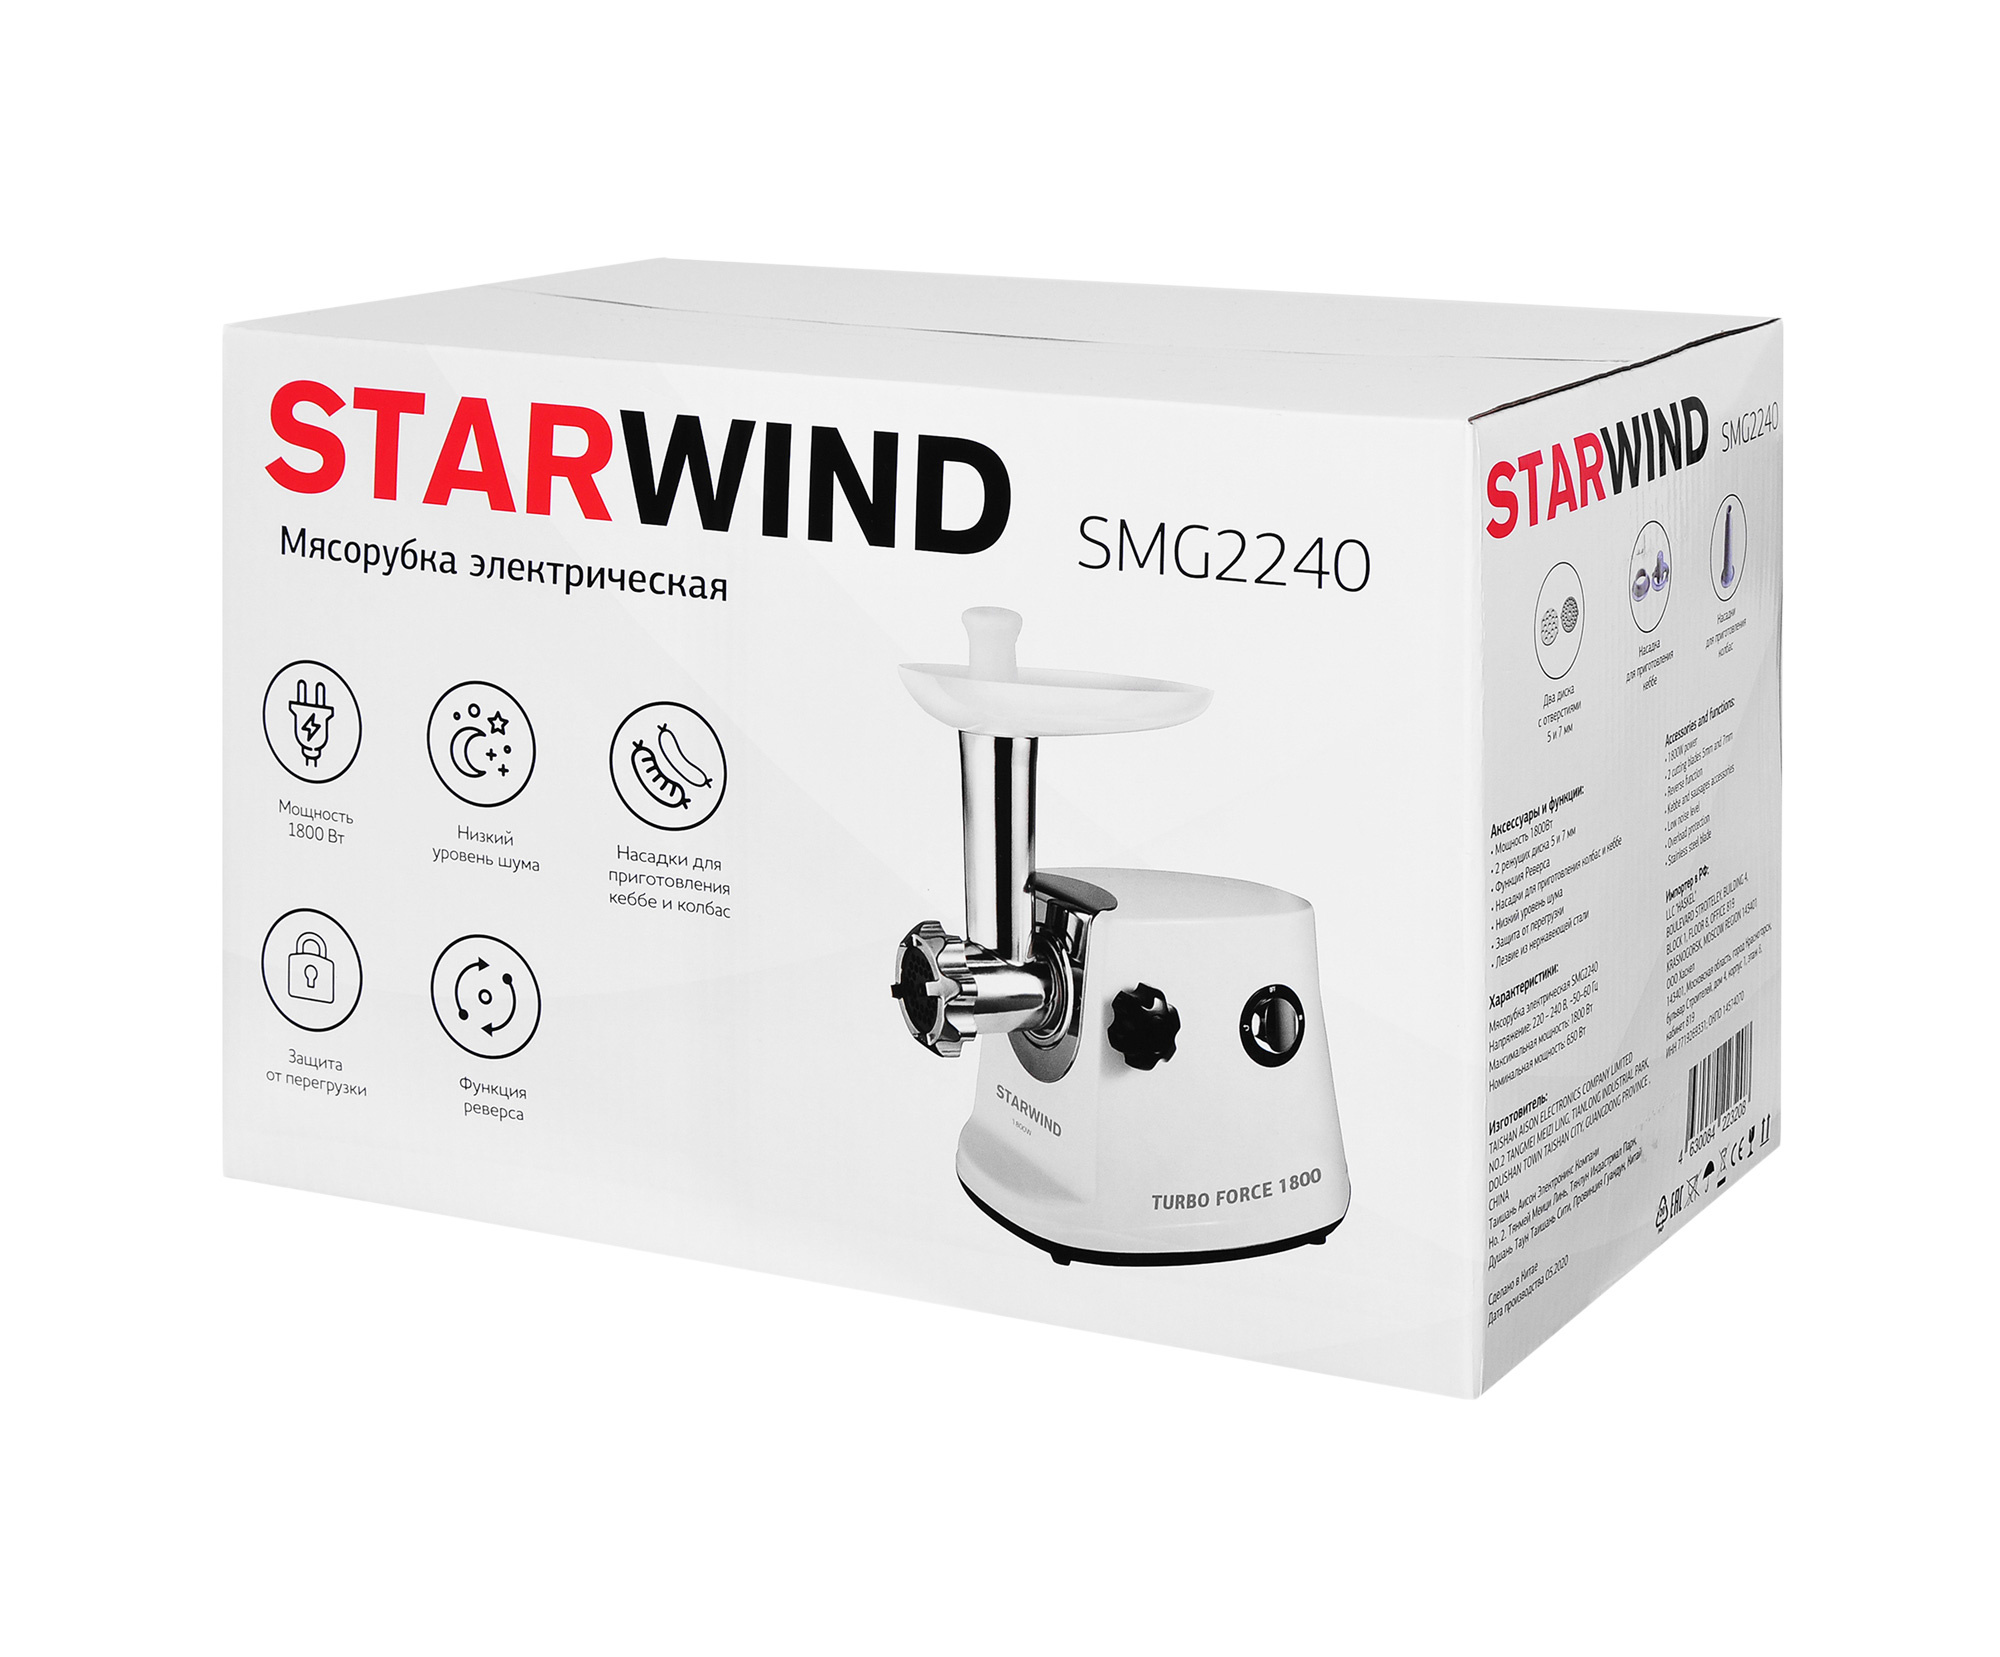 Мясорубка Starwind SMG2240 1800Вт белый